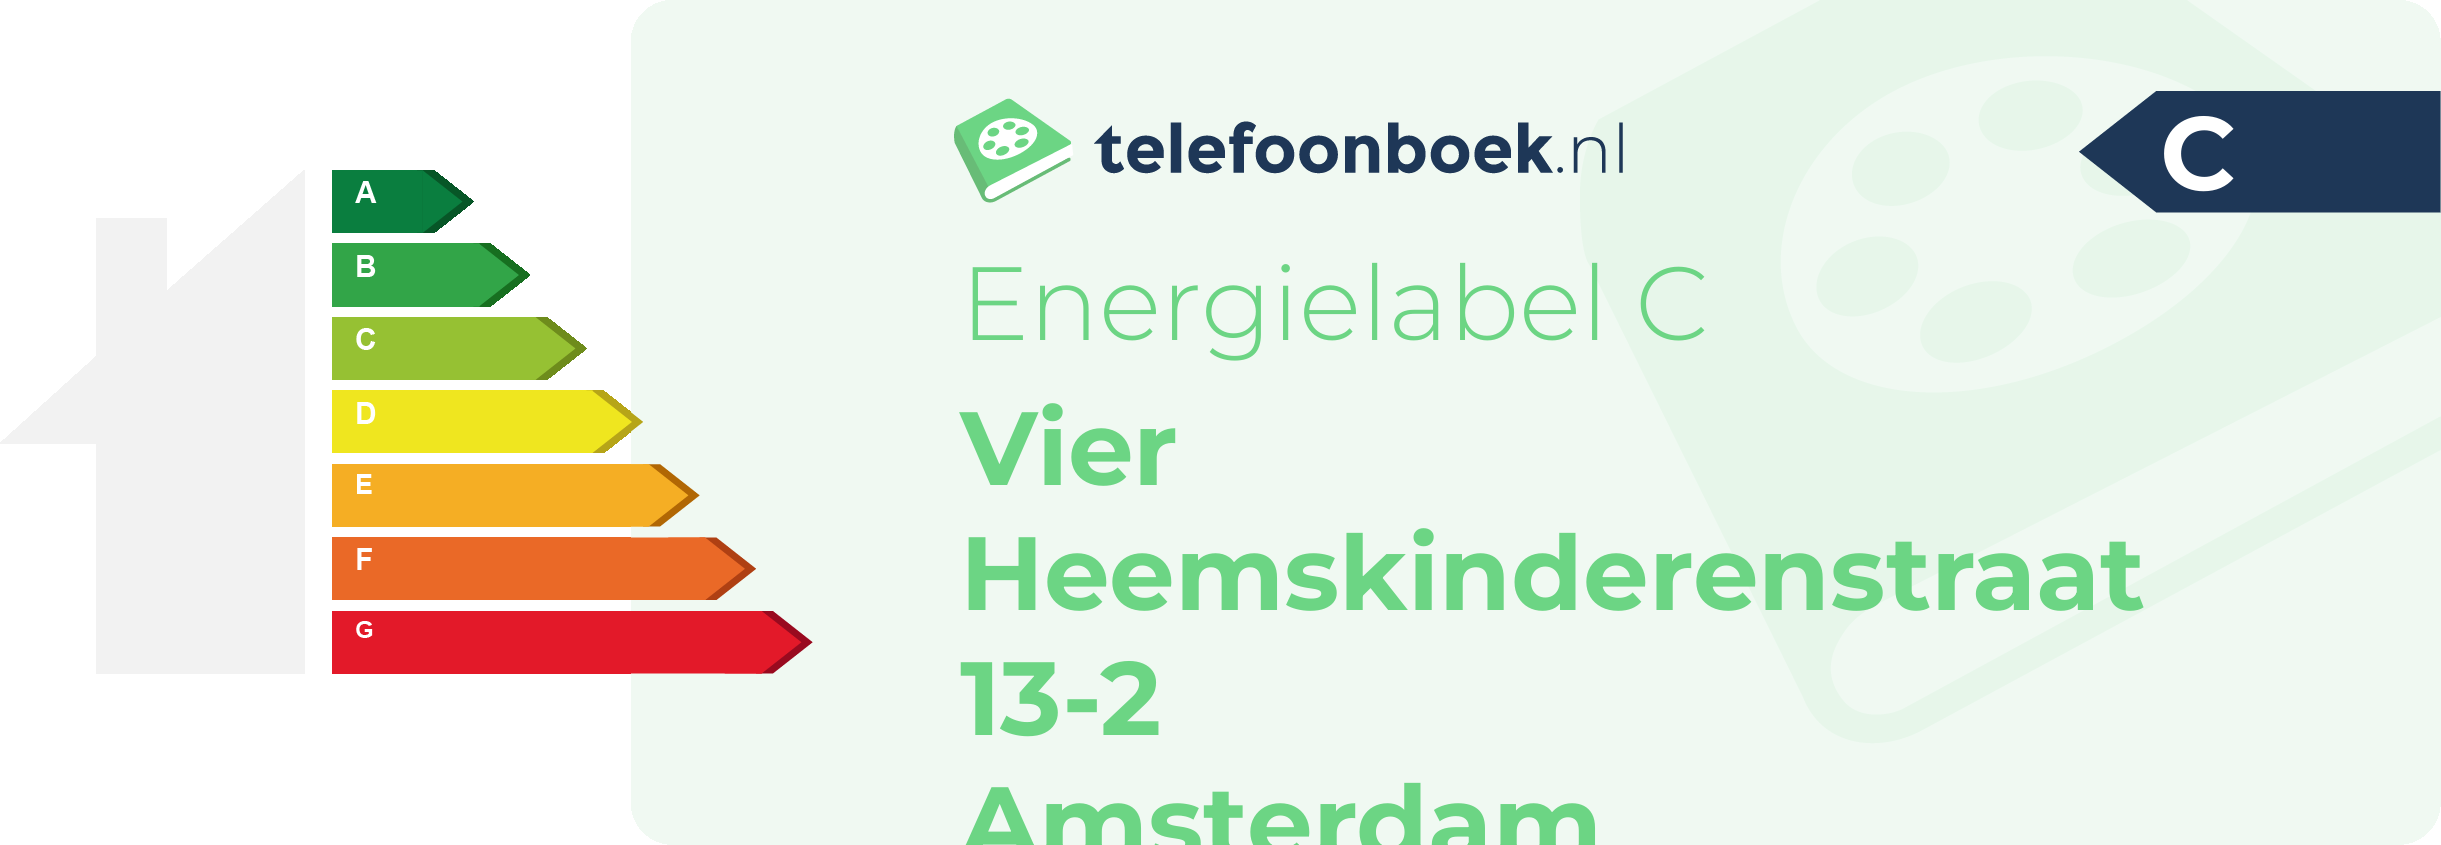 Energielabel Vier Heemskinderenstraat 13-2 Amsterdam